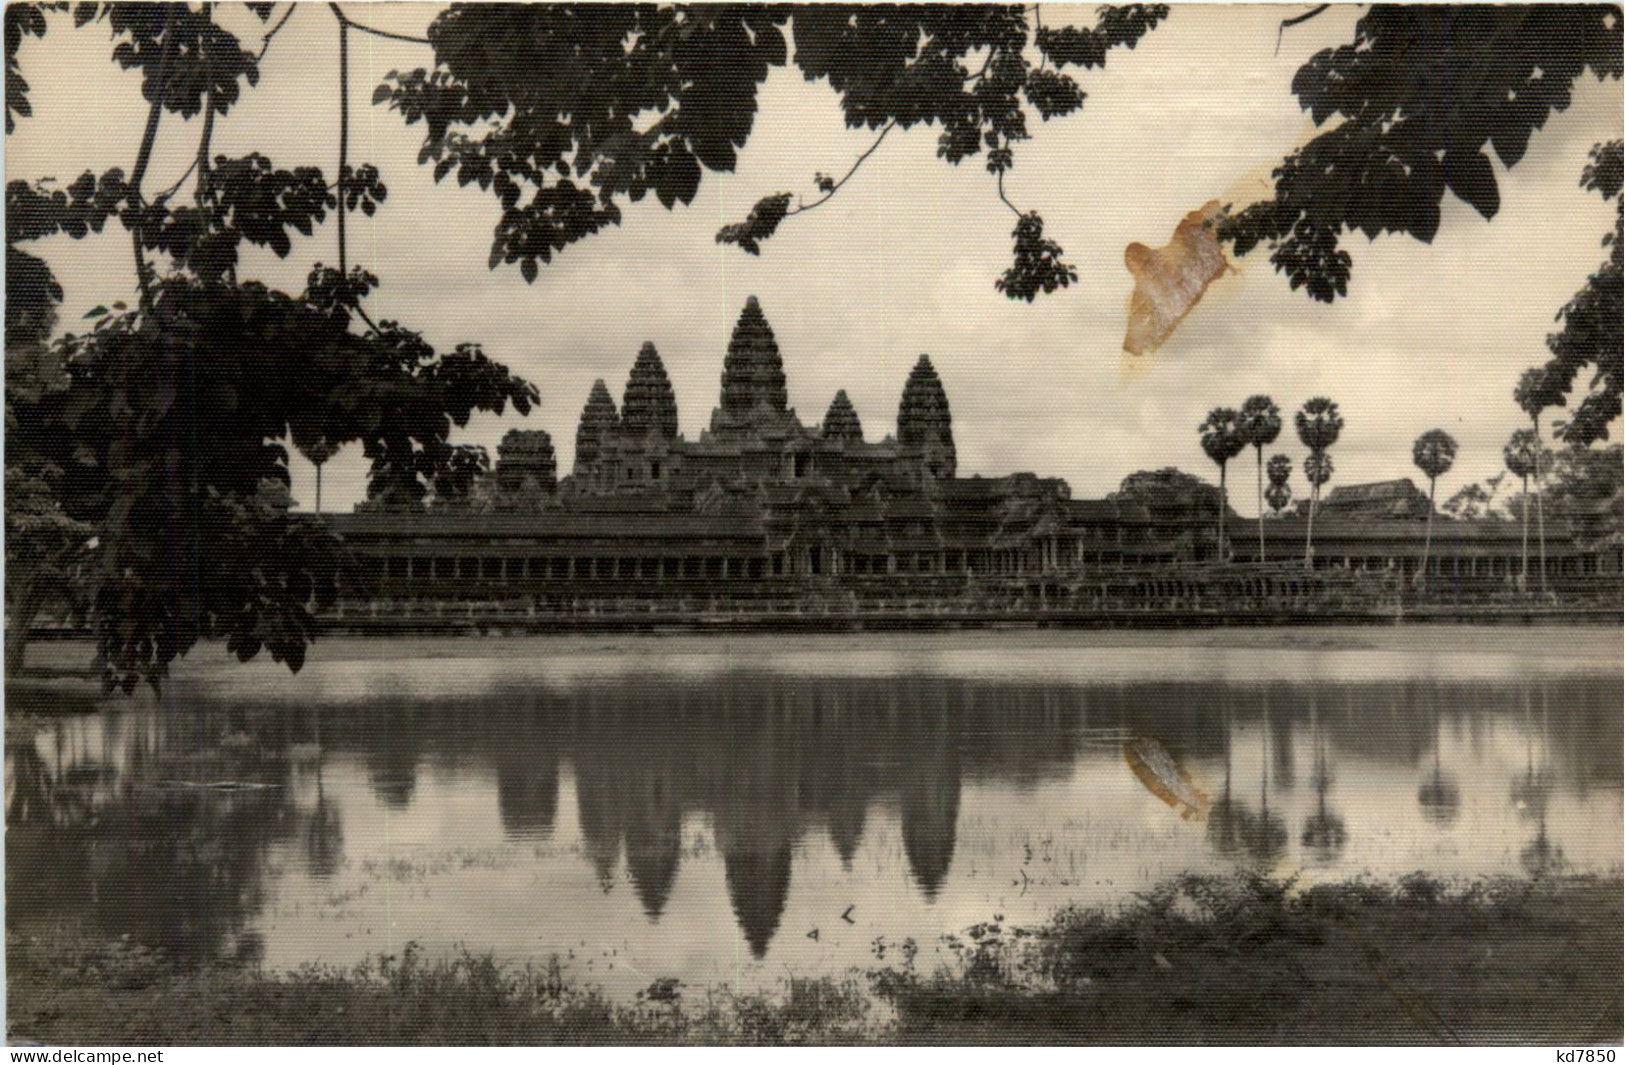 Combodia - Angkor Vat - Cambogia